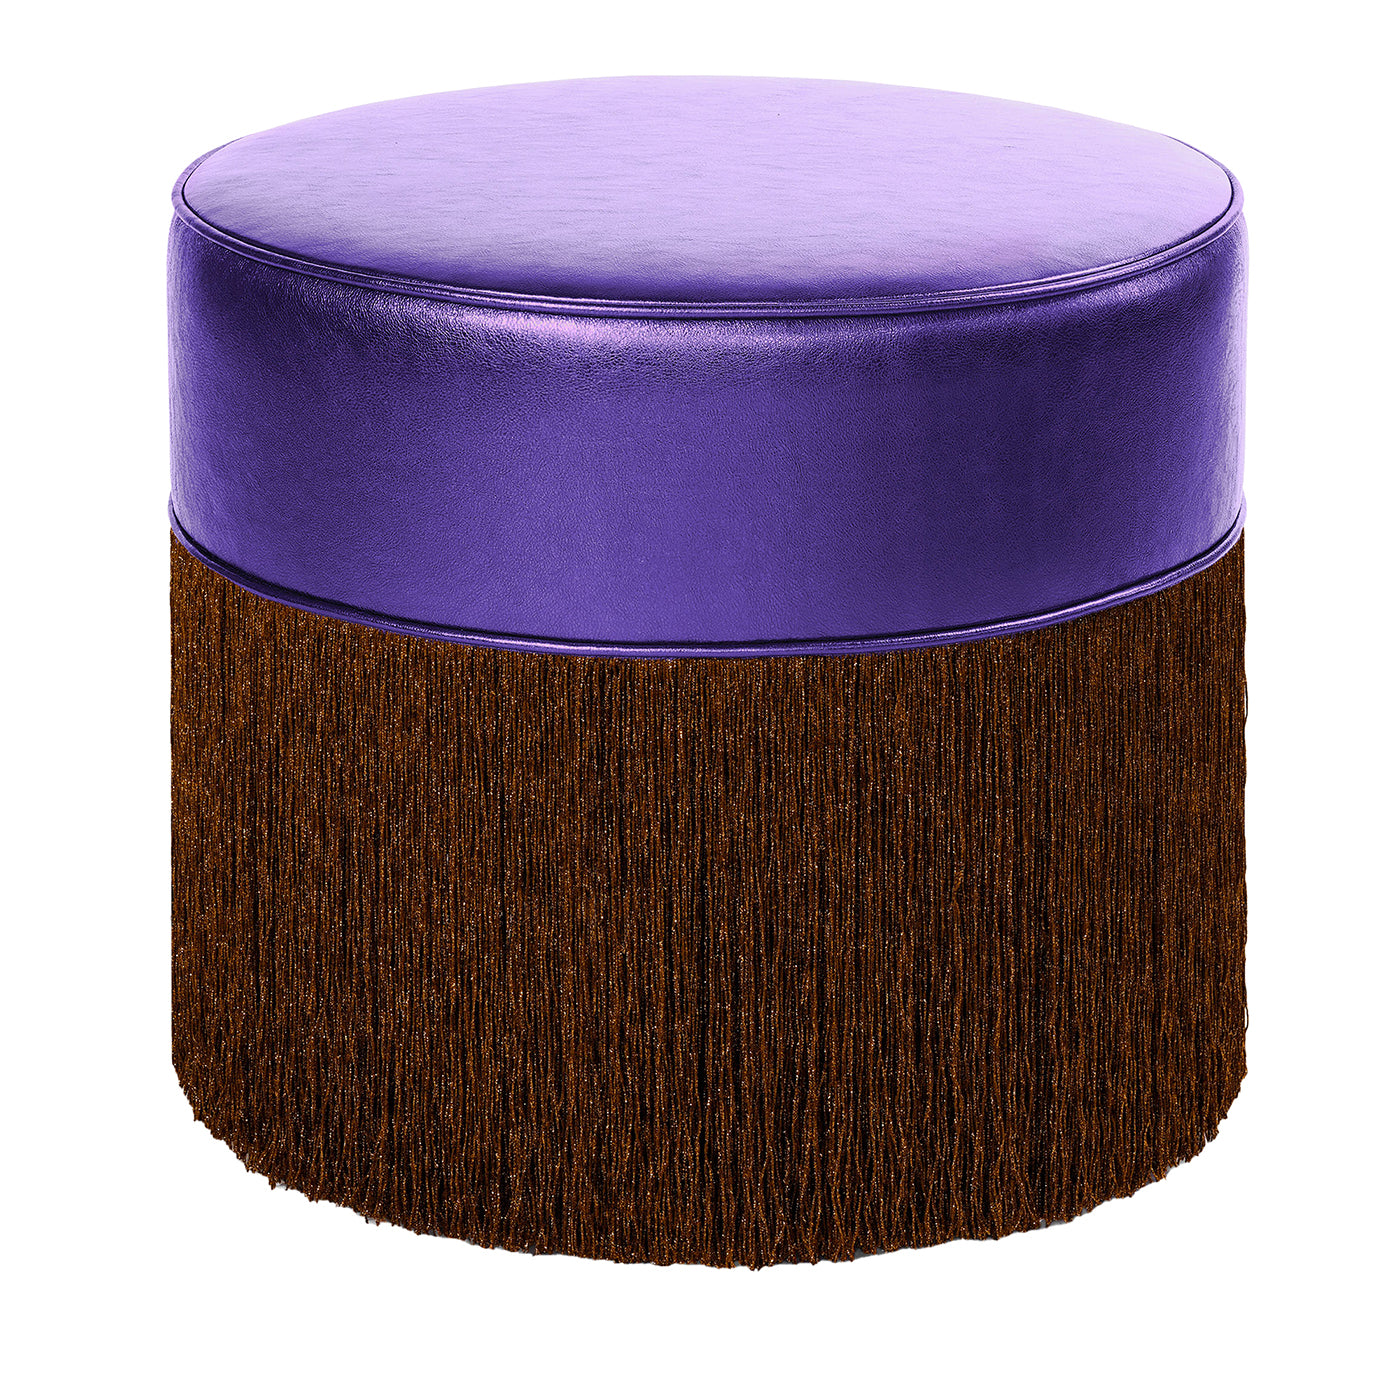 Pouf en cuir métallisé violet brillant avec franges en lurex marron - Vue principale